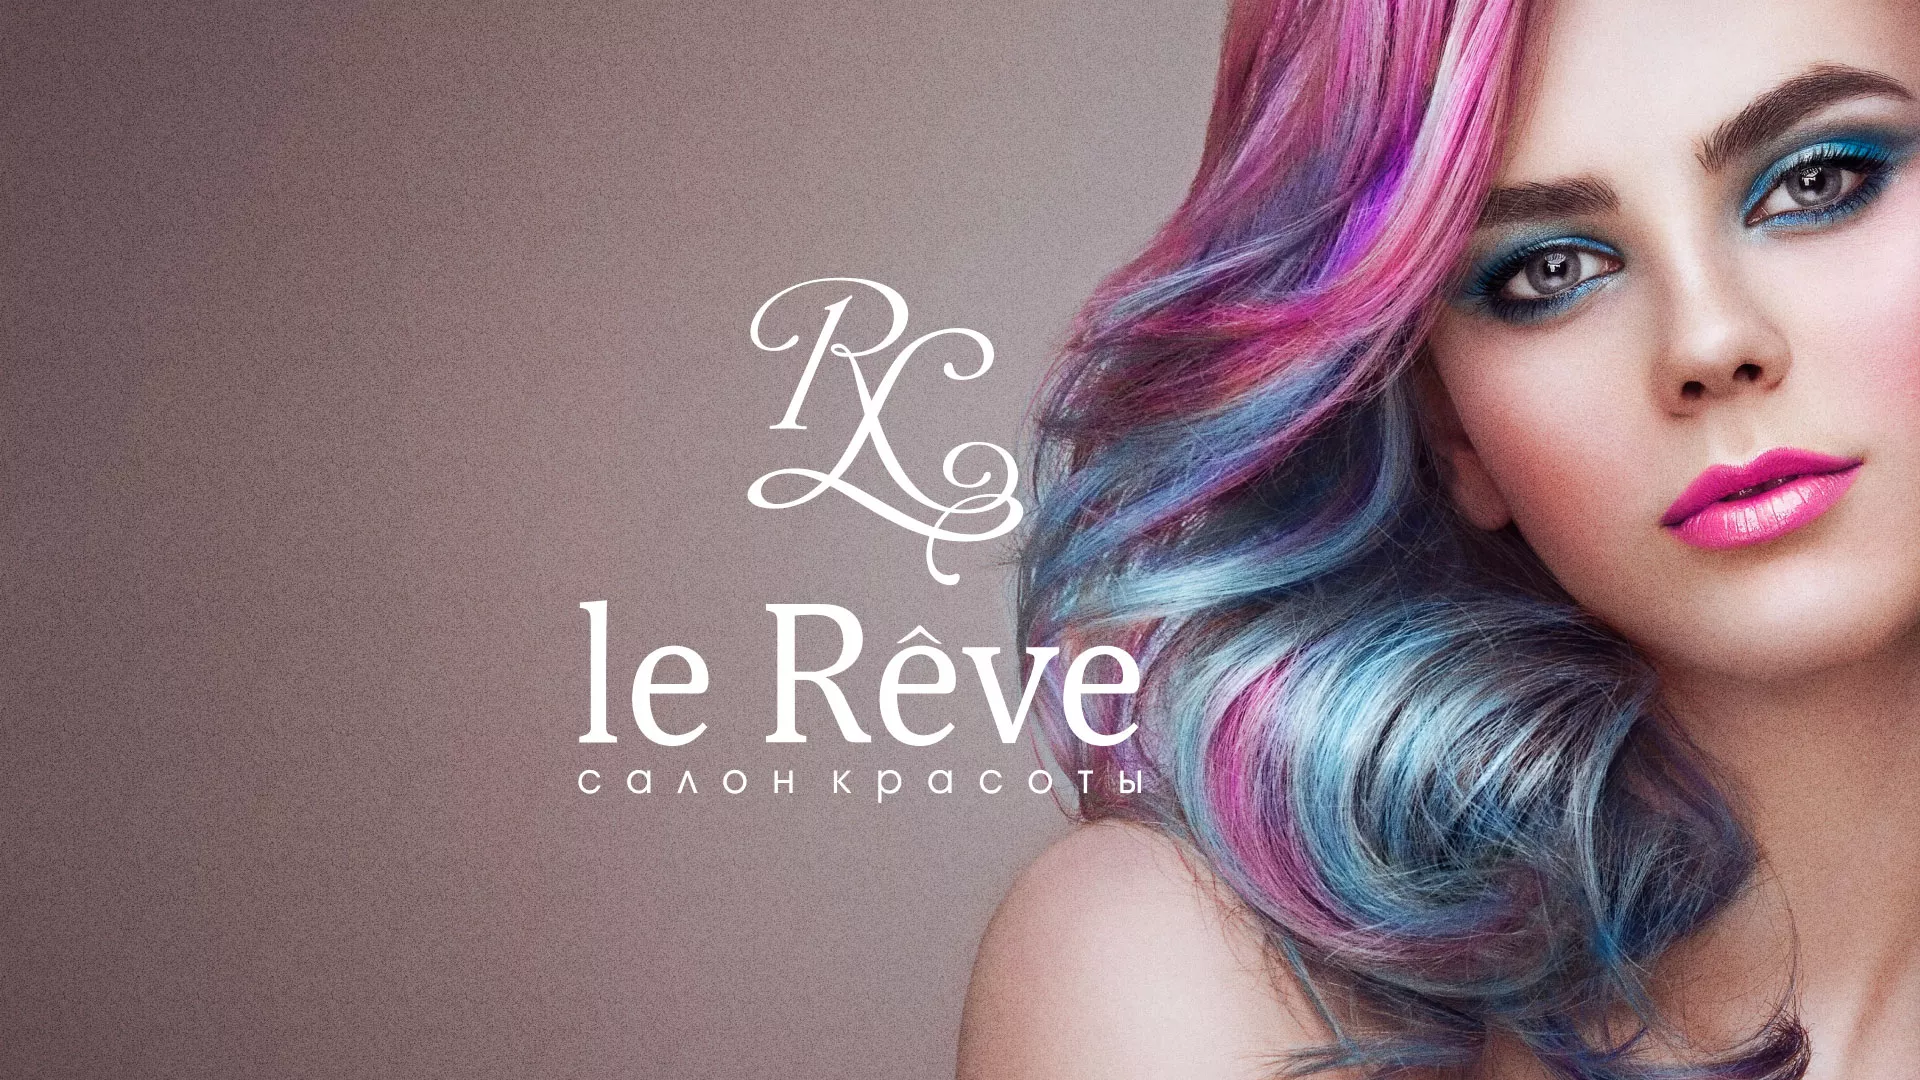 Создание сайта для салона красоты «Le Reve» в Каменногорске